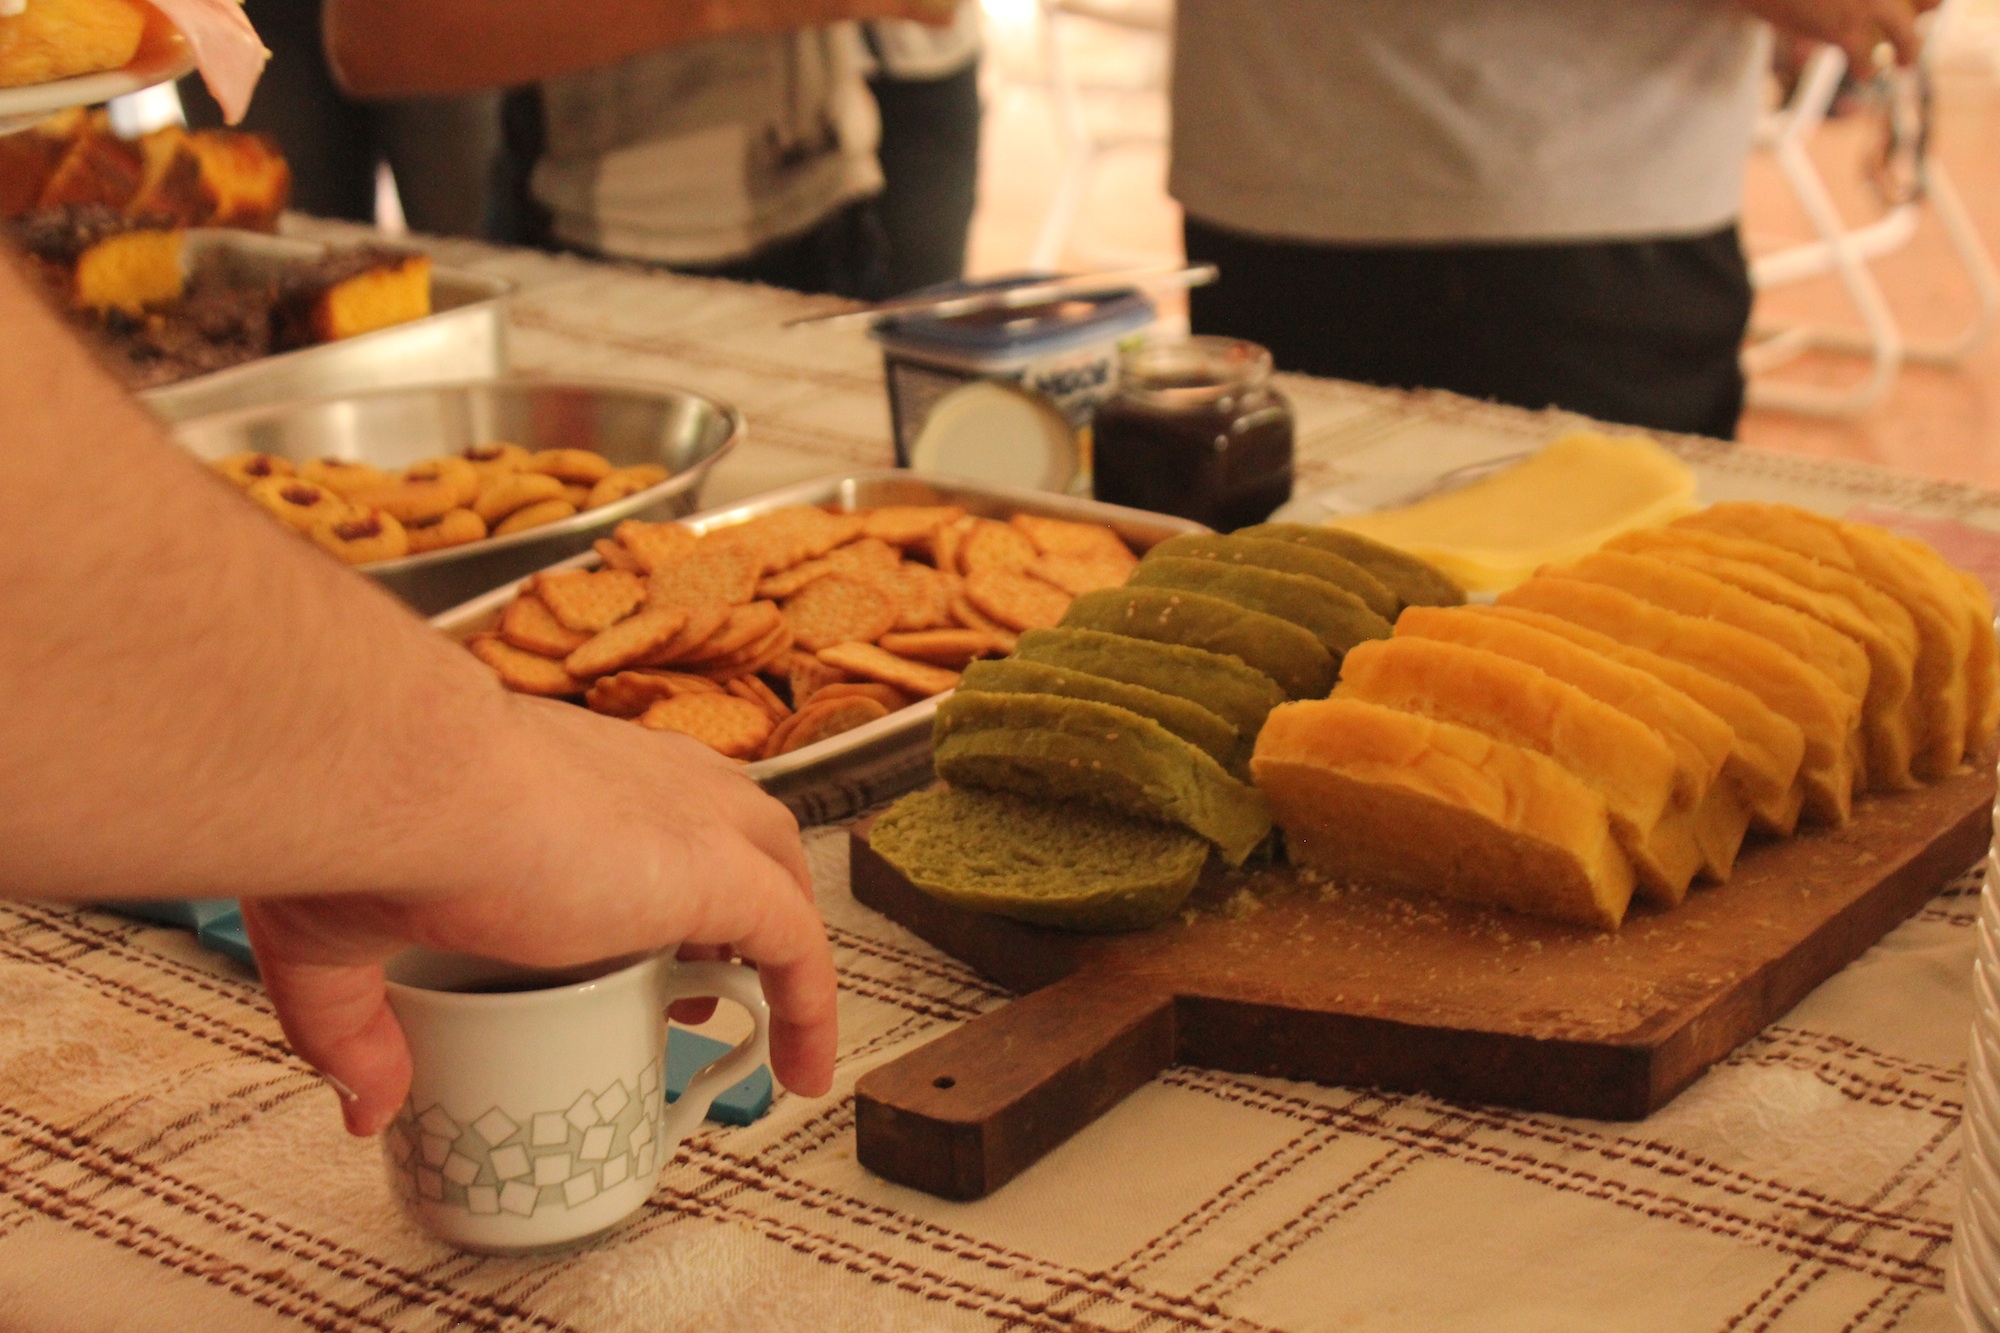 Tudo orgânico: café da manhã com produtos feitos a partir do que foi plantado no próprio sítio Paiquerê (Foto: Thiago Borges / Periferia em Movimento)